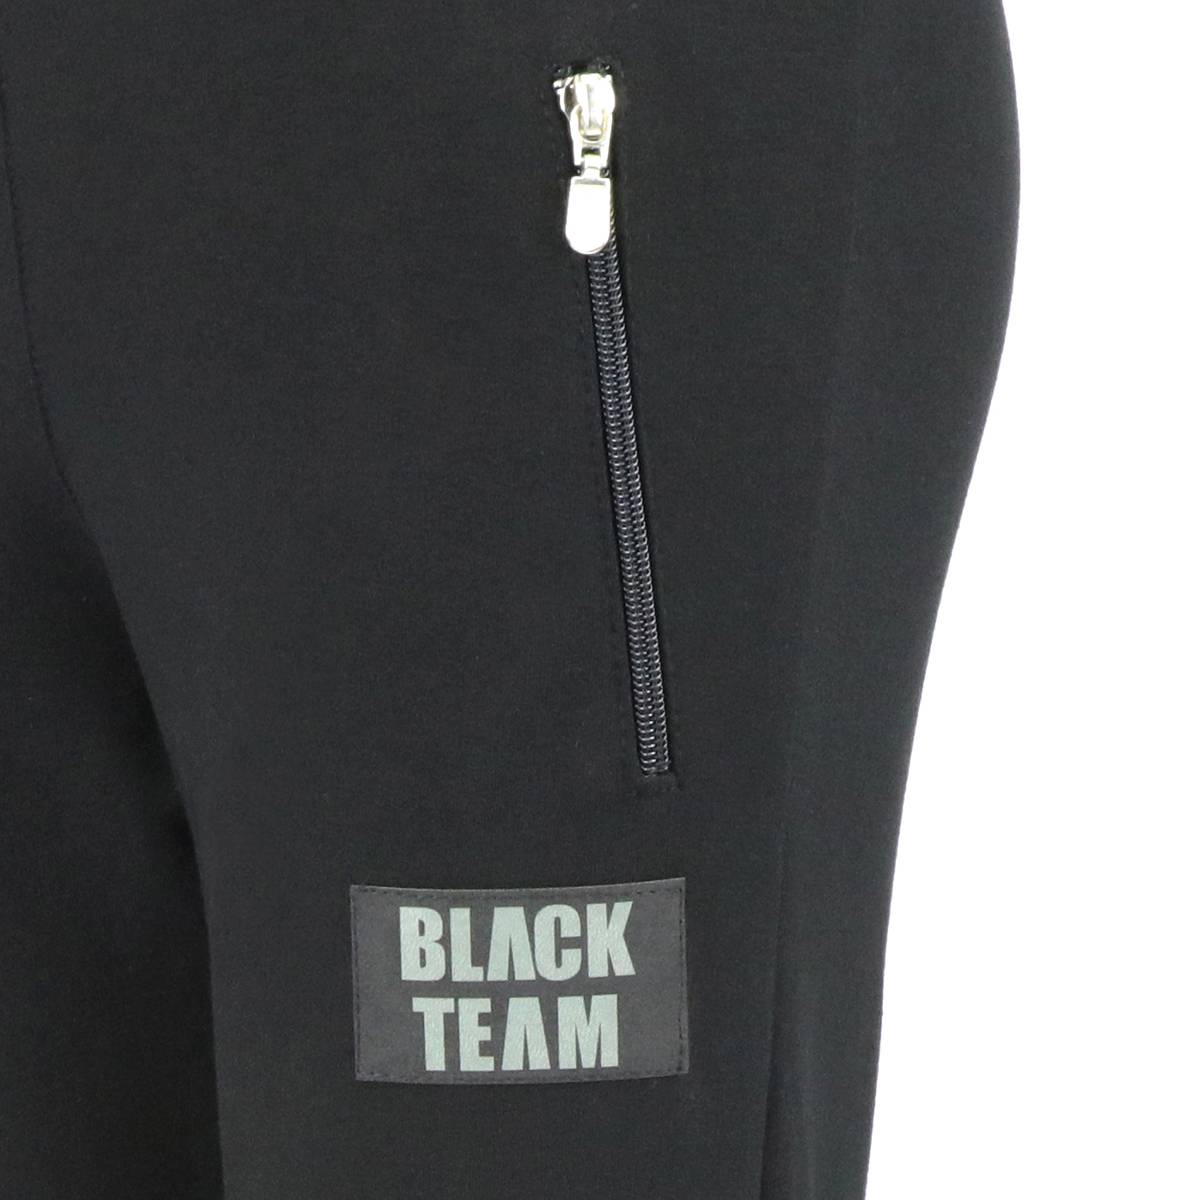 Spodnie dresowe dla chłopca, kolor czarny, naszywka na nogawce Black Team Tup Tup